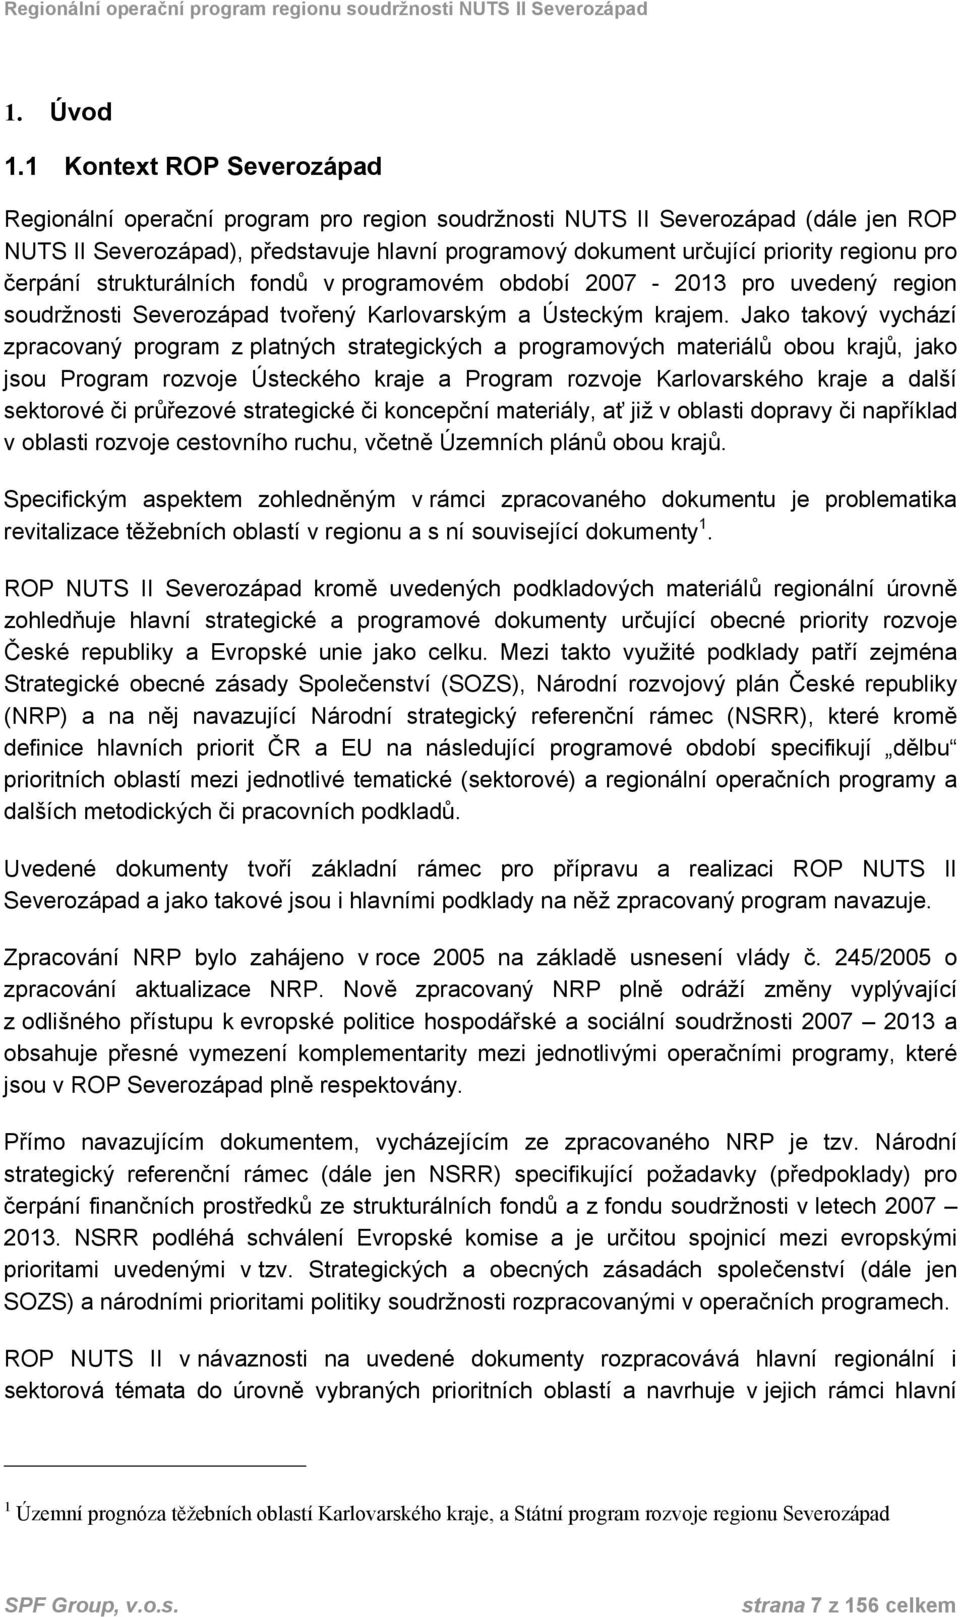 pro čerpání strukturálních fondů v programovém období 2007-2013 pro uvedený region soudržnosti Severozápad tvořený Karlovarským a Ústeckým krajem.